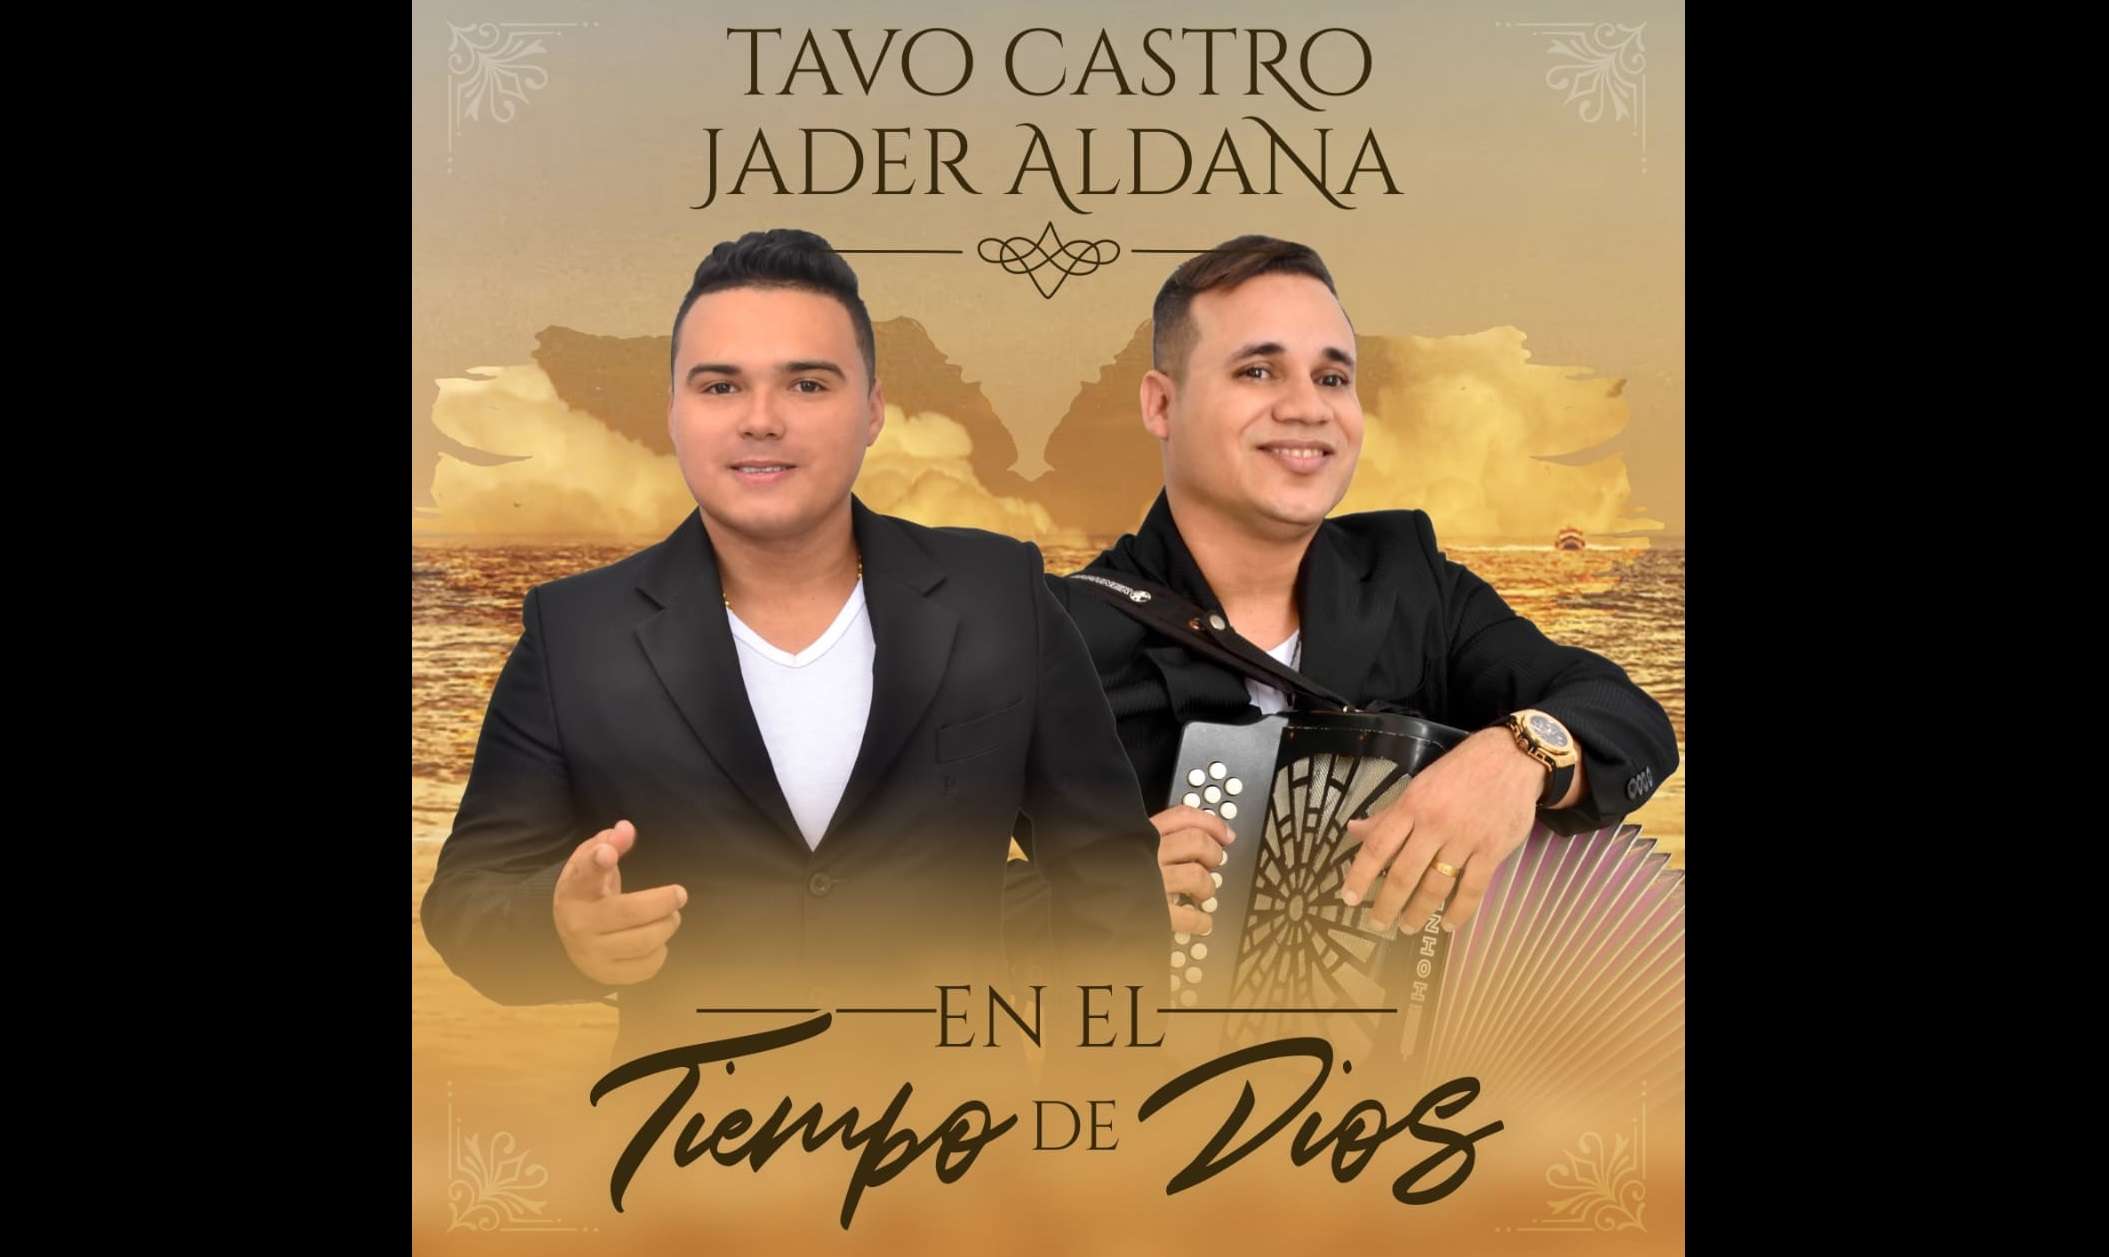 El vallenato de moda: Tavo Castro & Jader Aldana estrenan su álbum ‘En el Tiempo de Dios’